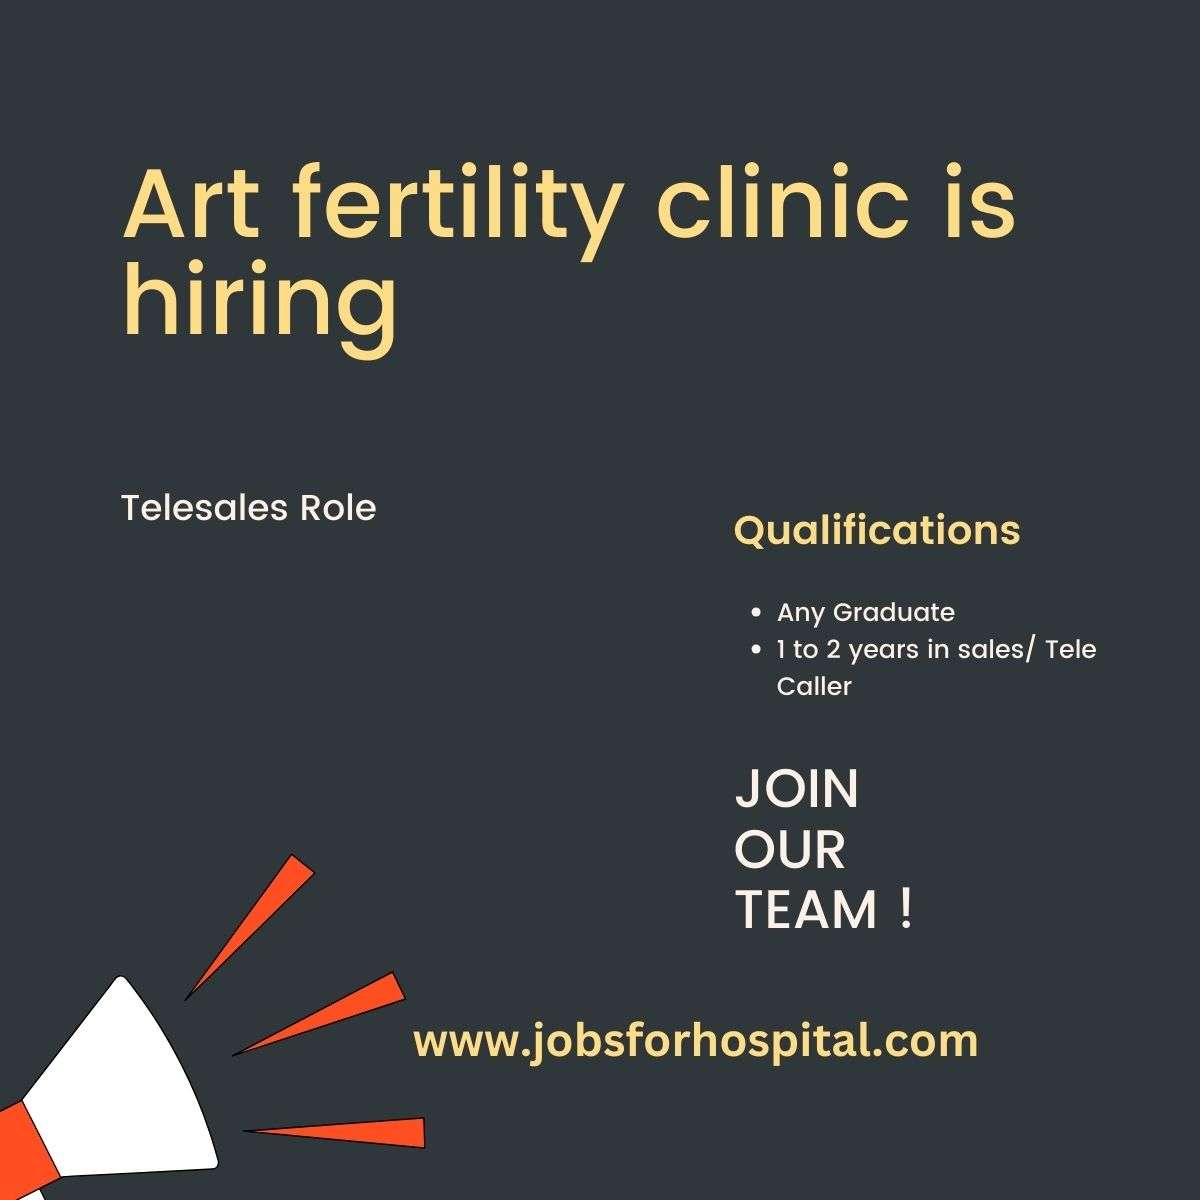 Art fertility clinic is hiring